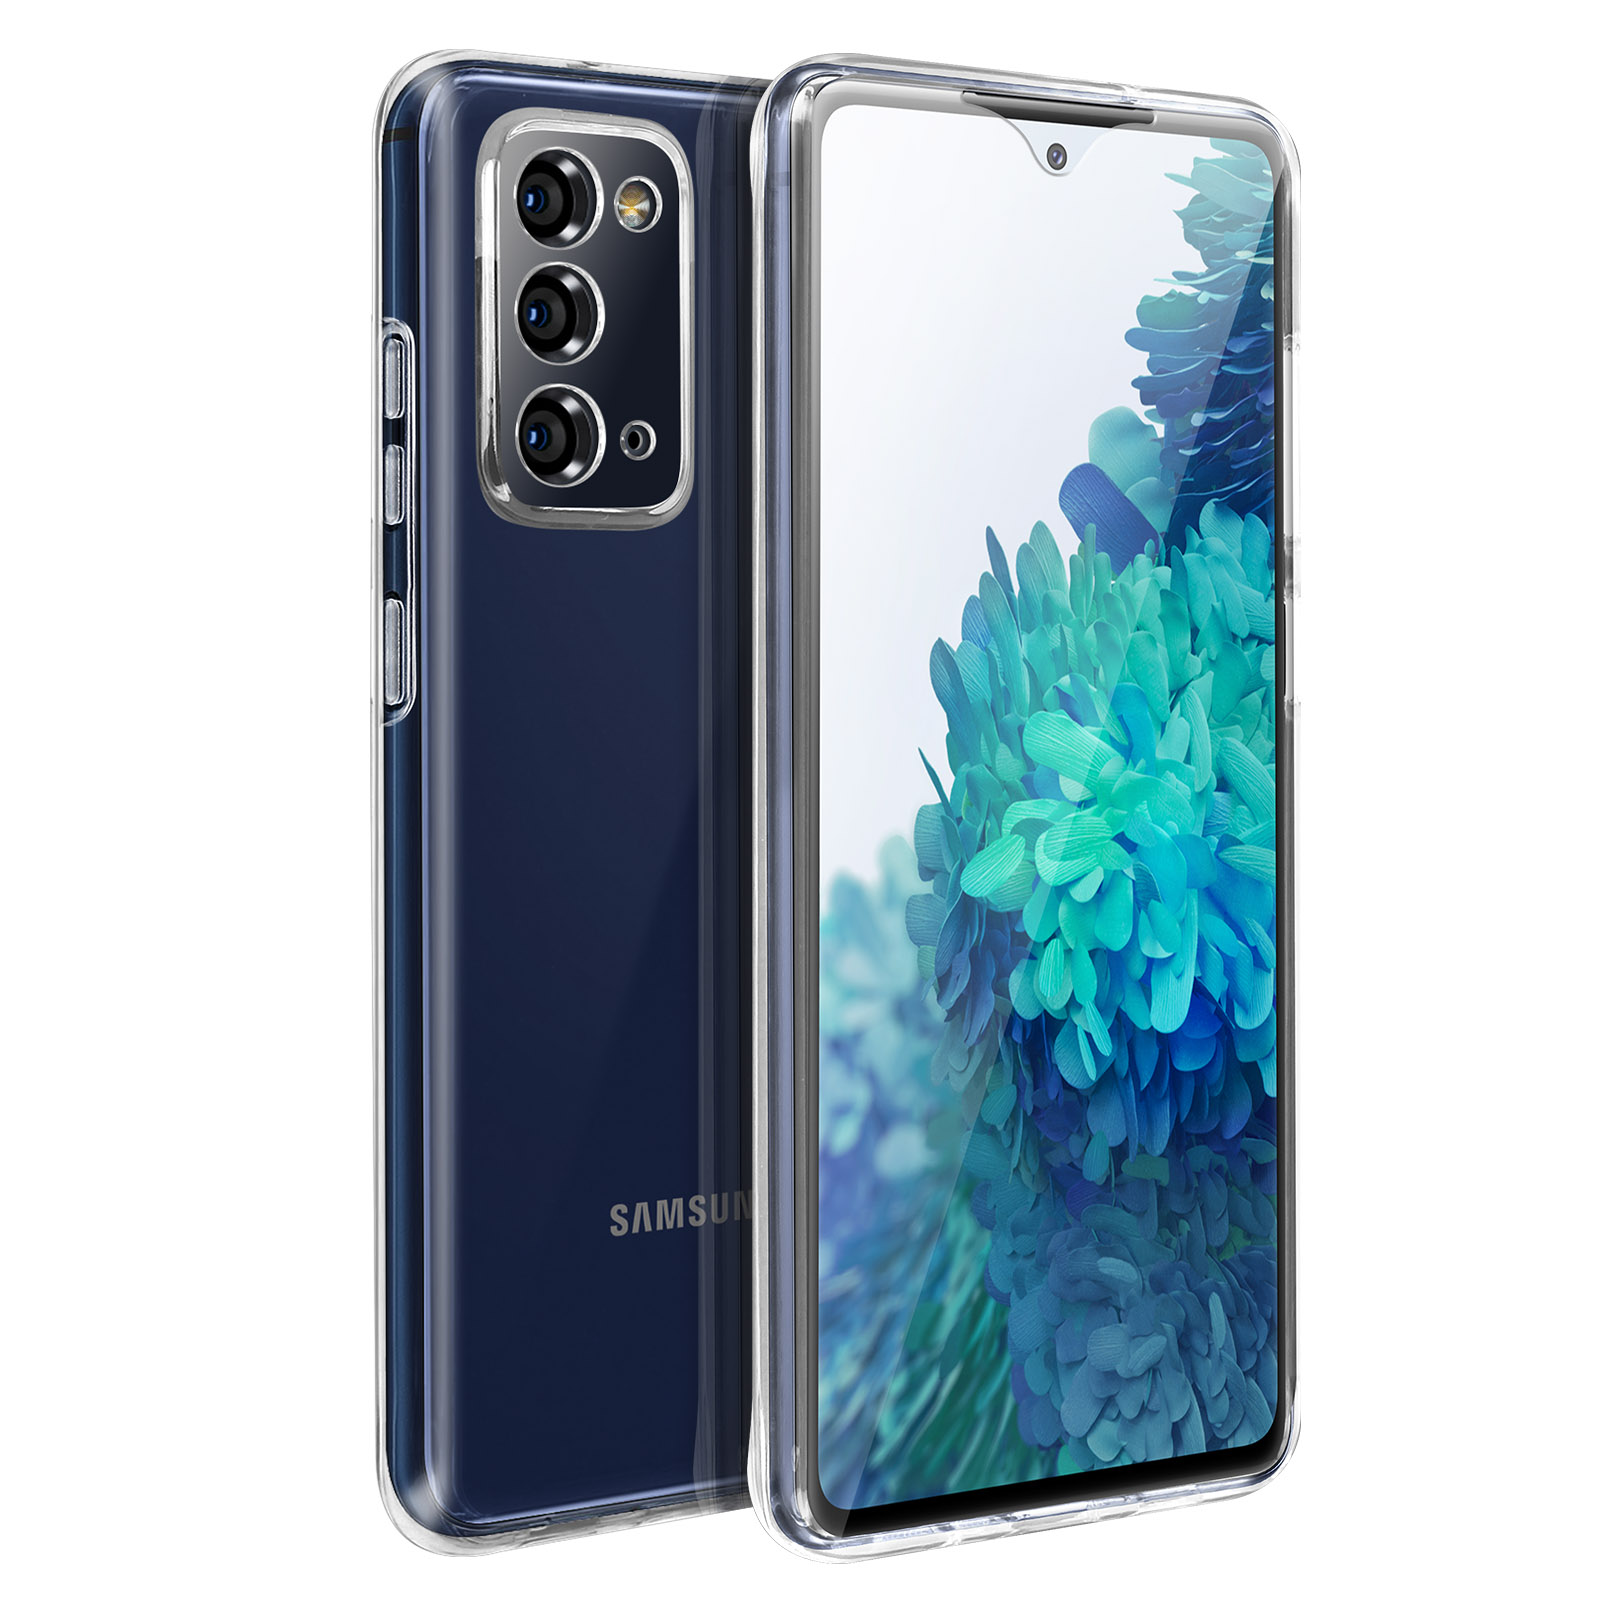 Coque Samsung Galaxy S20 FE 360 intégrale transparente Feuilles de Palmier  Noir Tendance La Coque Francaise. - Coquediscount